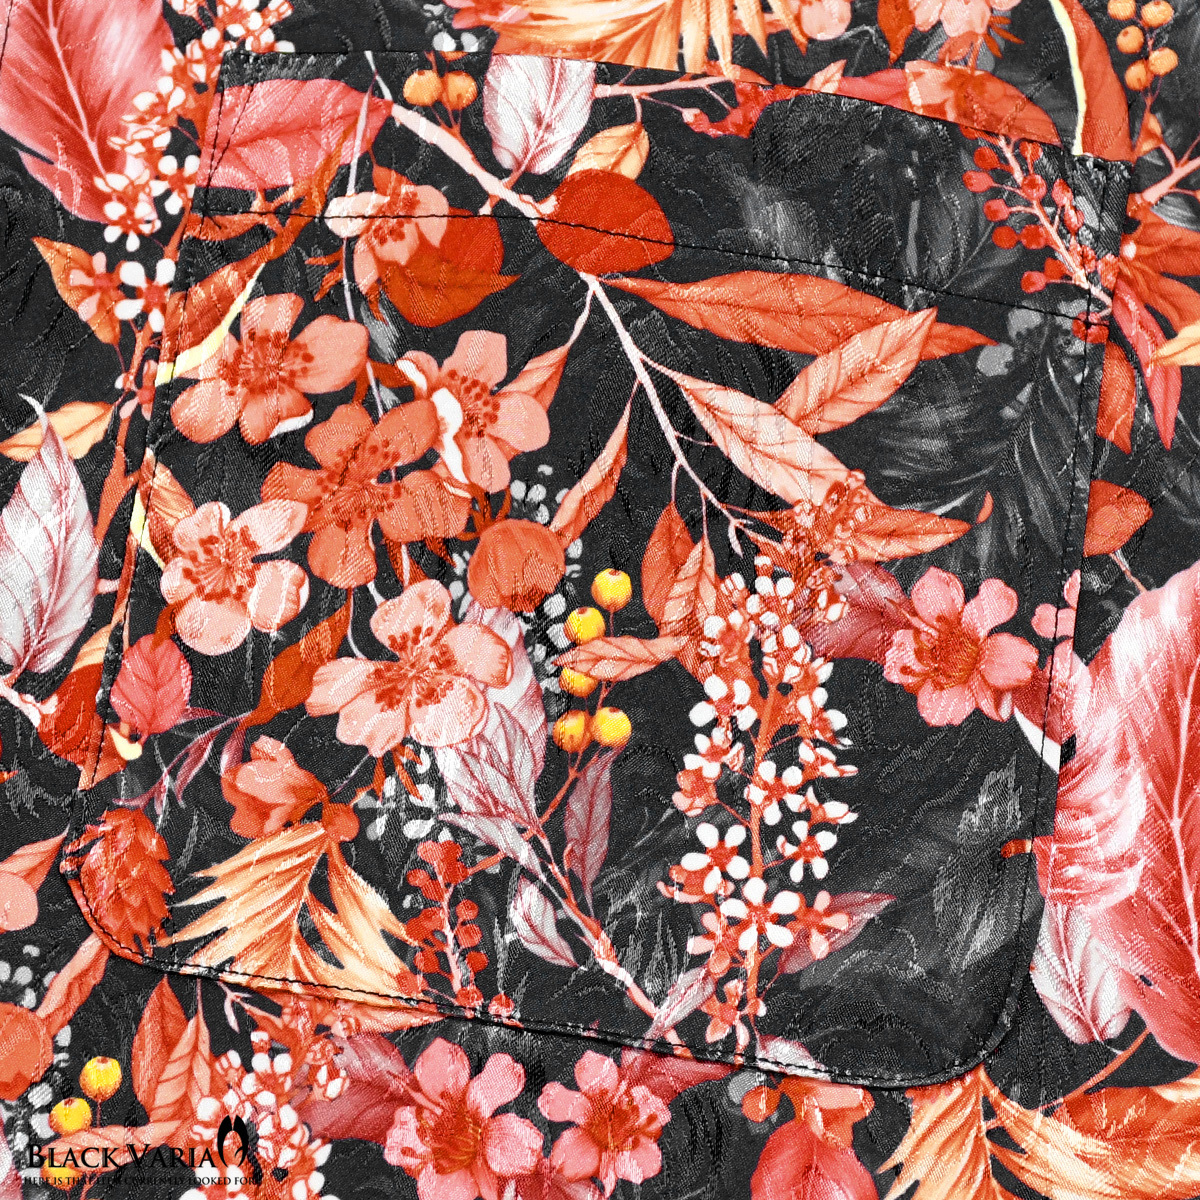 6#a201953-bkor ブラックバリア 隠れ豹ボタニカル柄 ドゥエボットーニ レギュラーカラー ジャガード ドレスシャツ メンズ(オレンジ橙黒) M_画像3